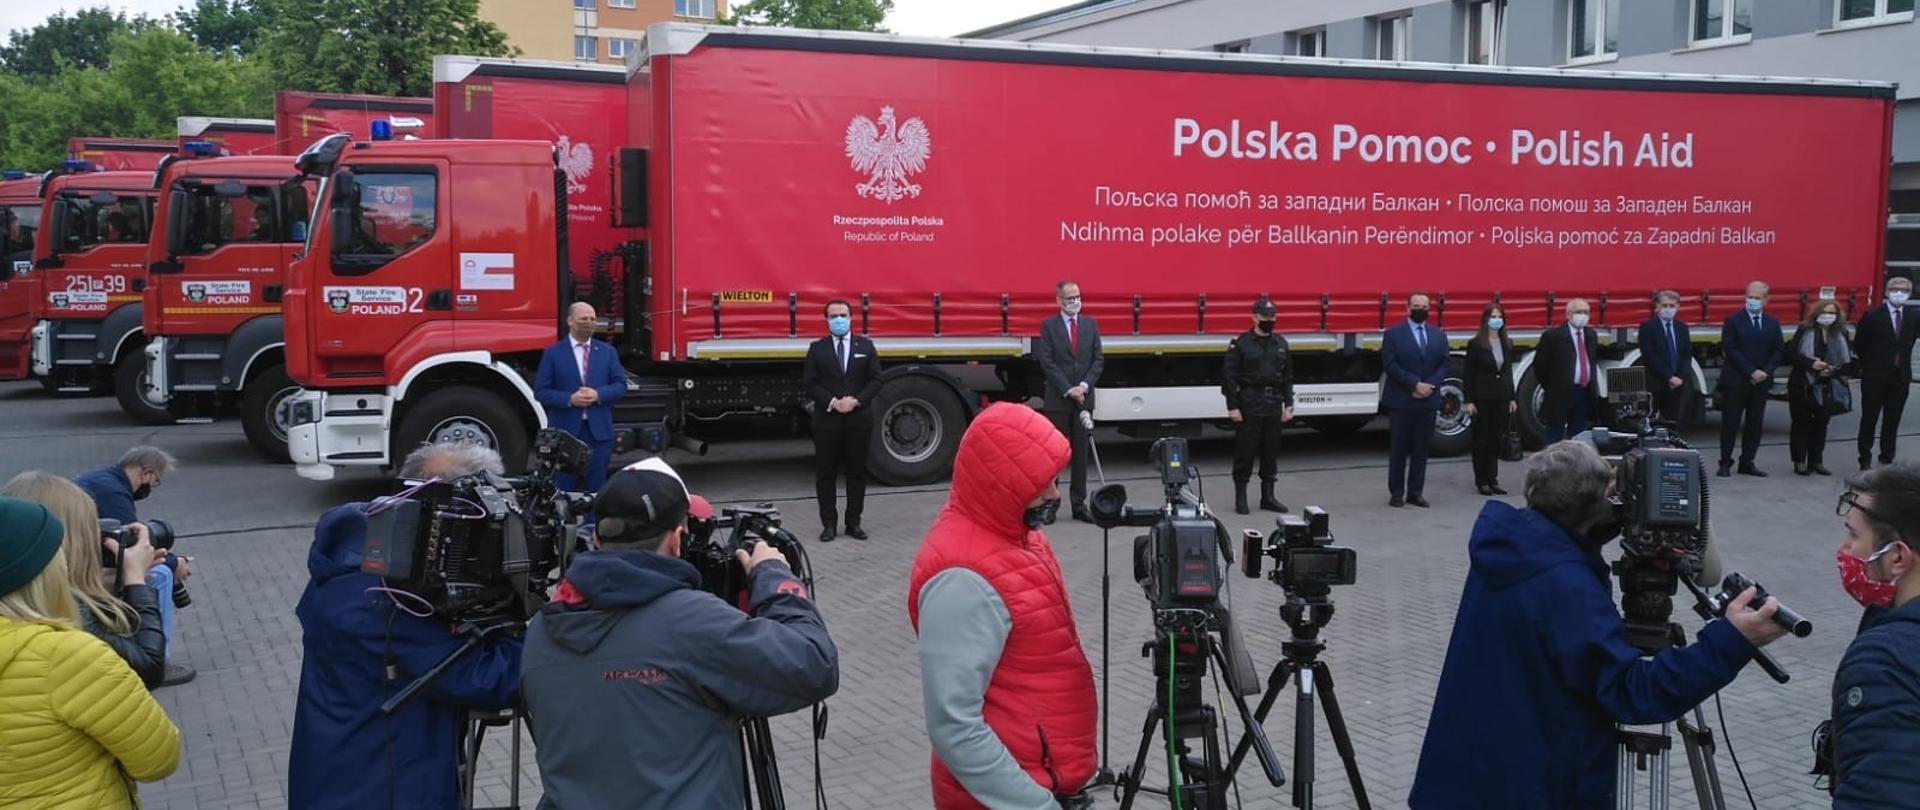 Polscy strażacy z pomocą dla Bałkanów – na zdjęciu na pierwszym planie dziennikarze, a w tle ciężarówki z pomocą humanitarną.